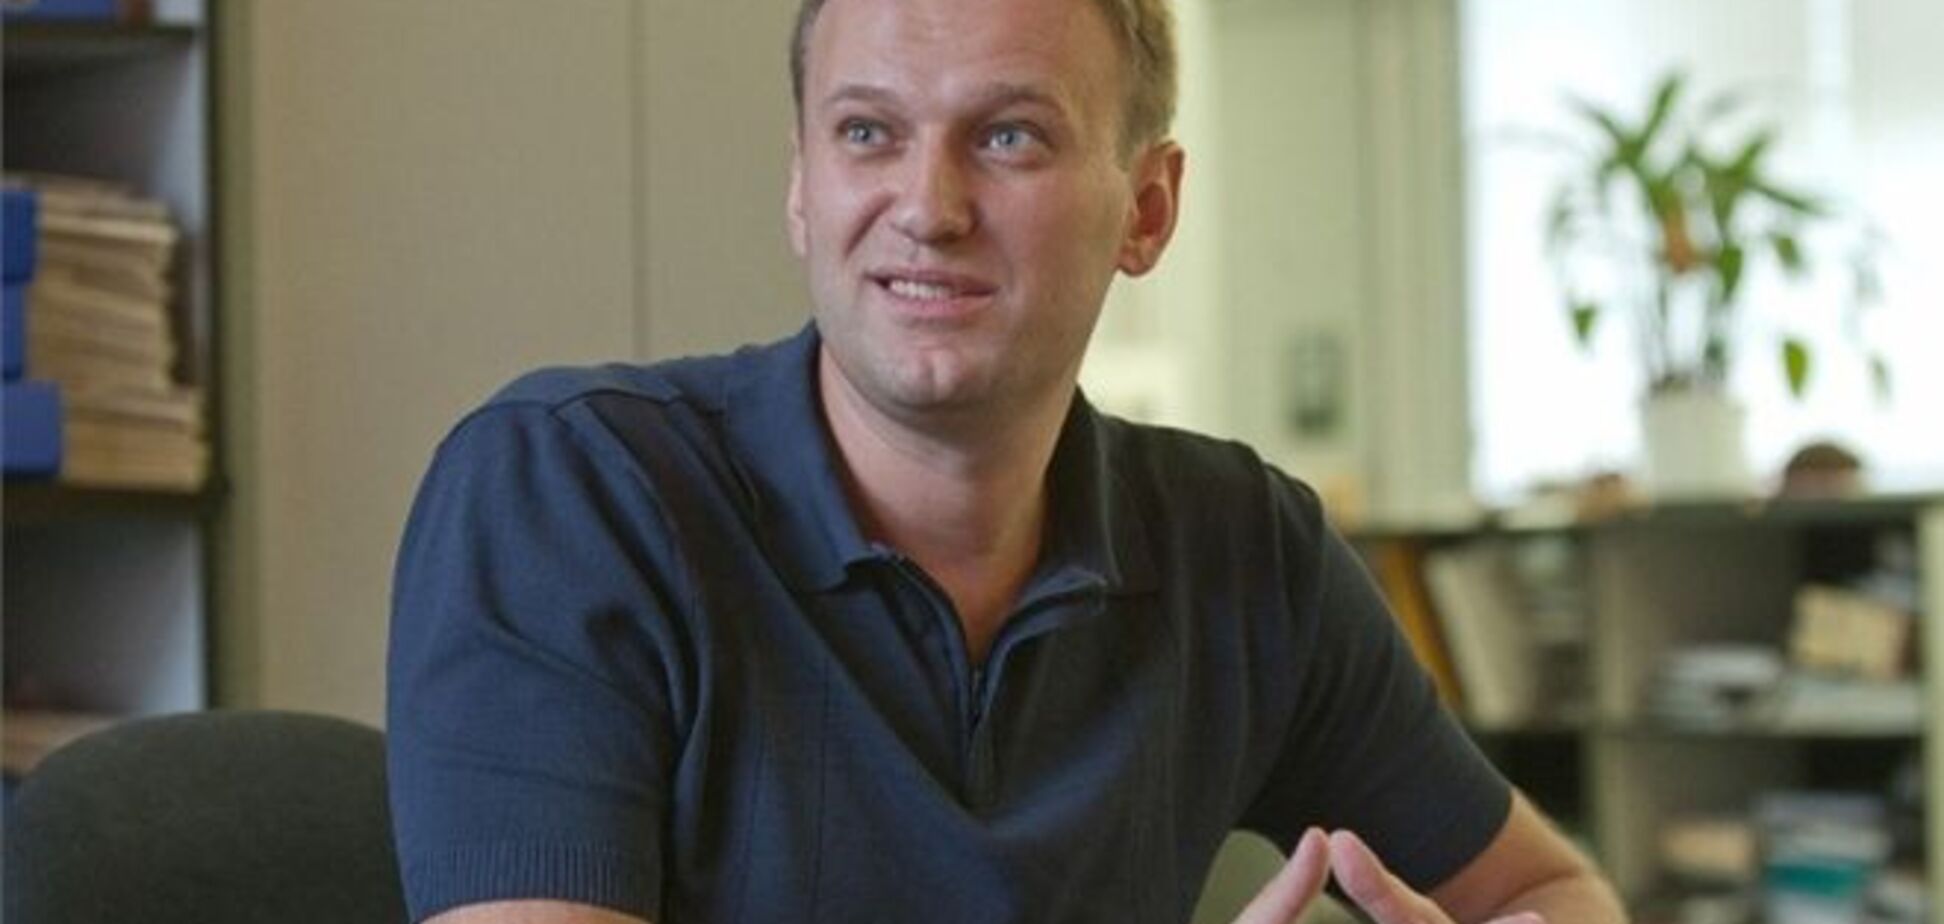 Схему финансирования кампании Навального назвали незаконной